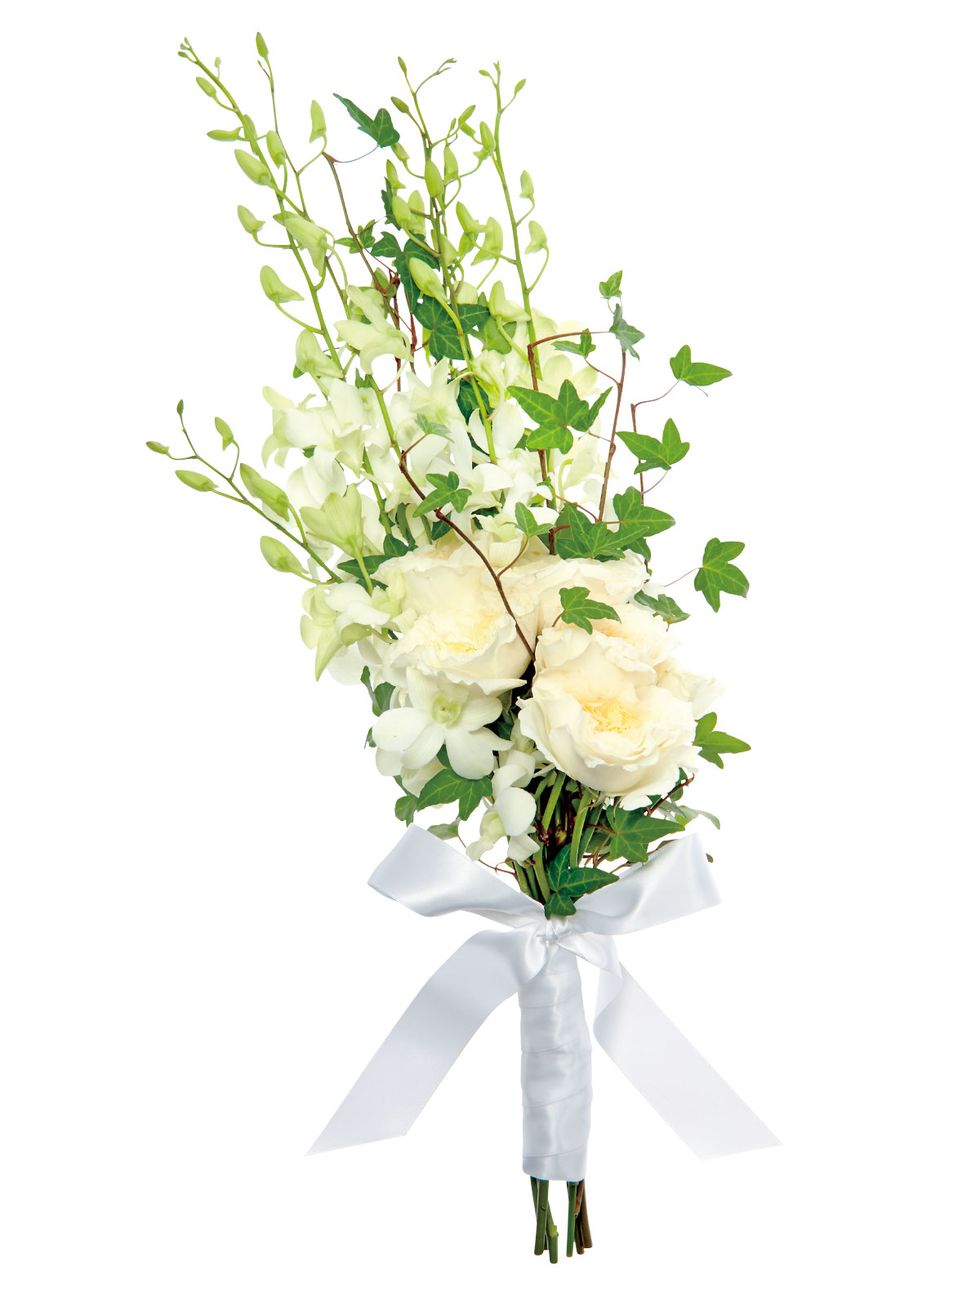 Flower, Bouquet, White, Cut flowers, Plant, Flower Arranging, Floristry, Rose, Flowering plant, Artificial flower, 